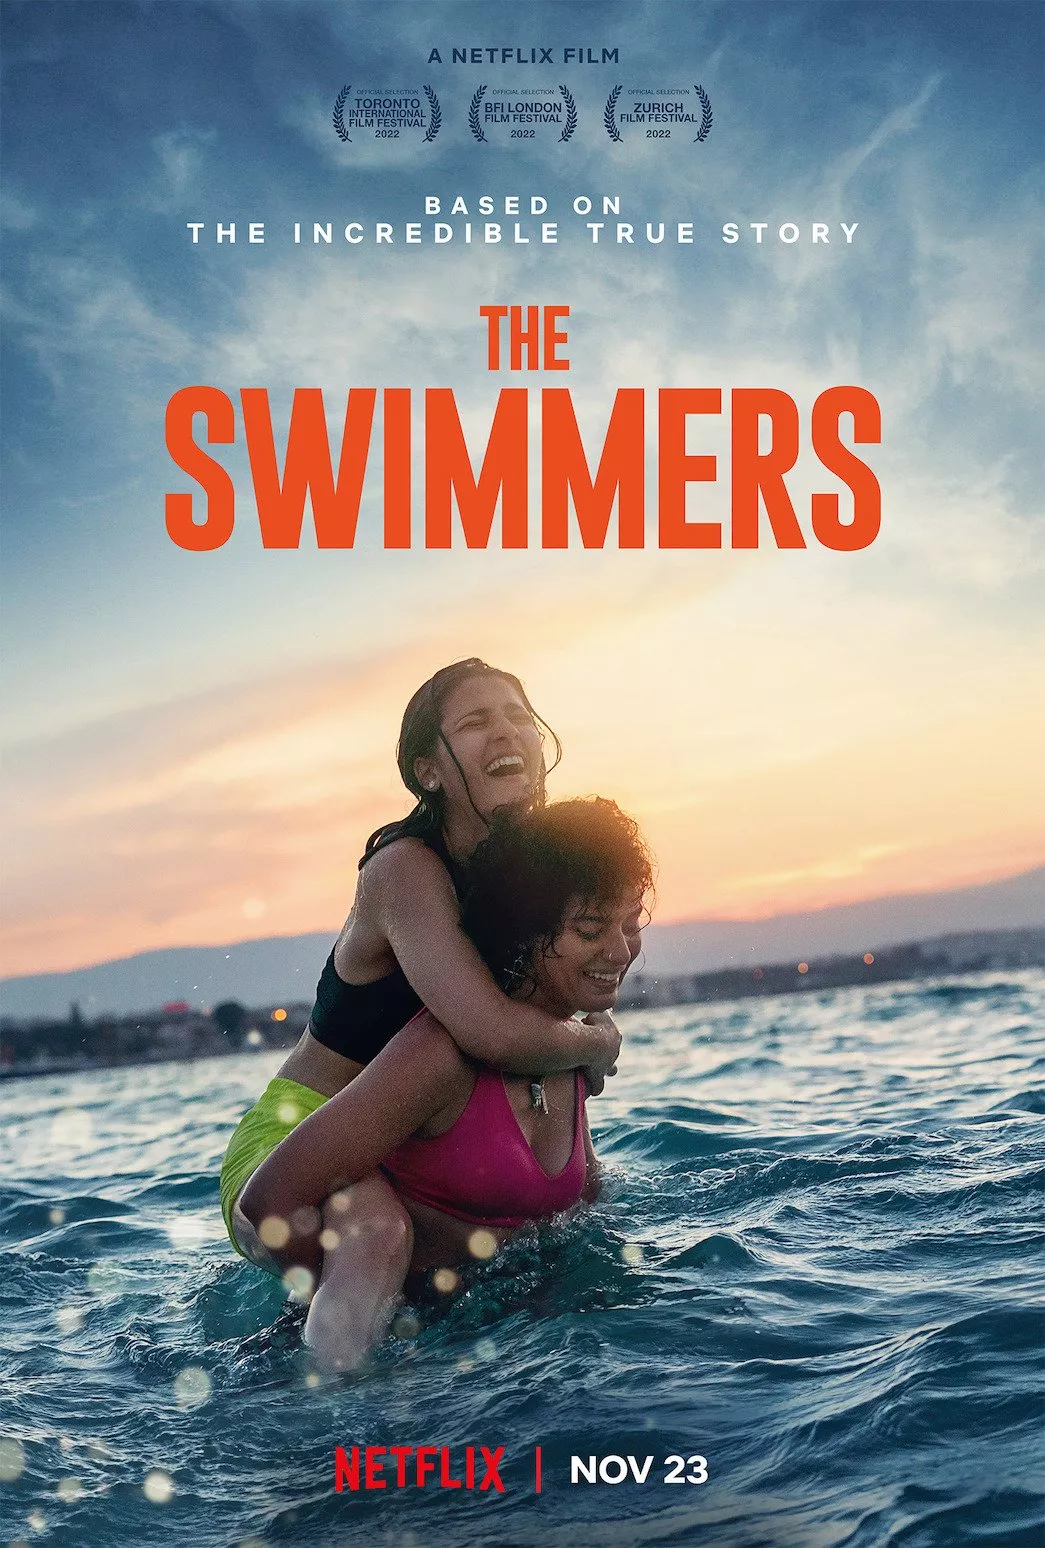 فيلم The Swimmers قريباً على نتفلكس. قصة ملهمة عن بطلتين من العالم العربي!